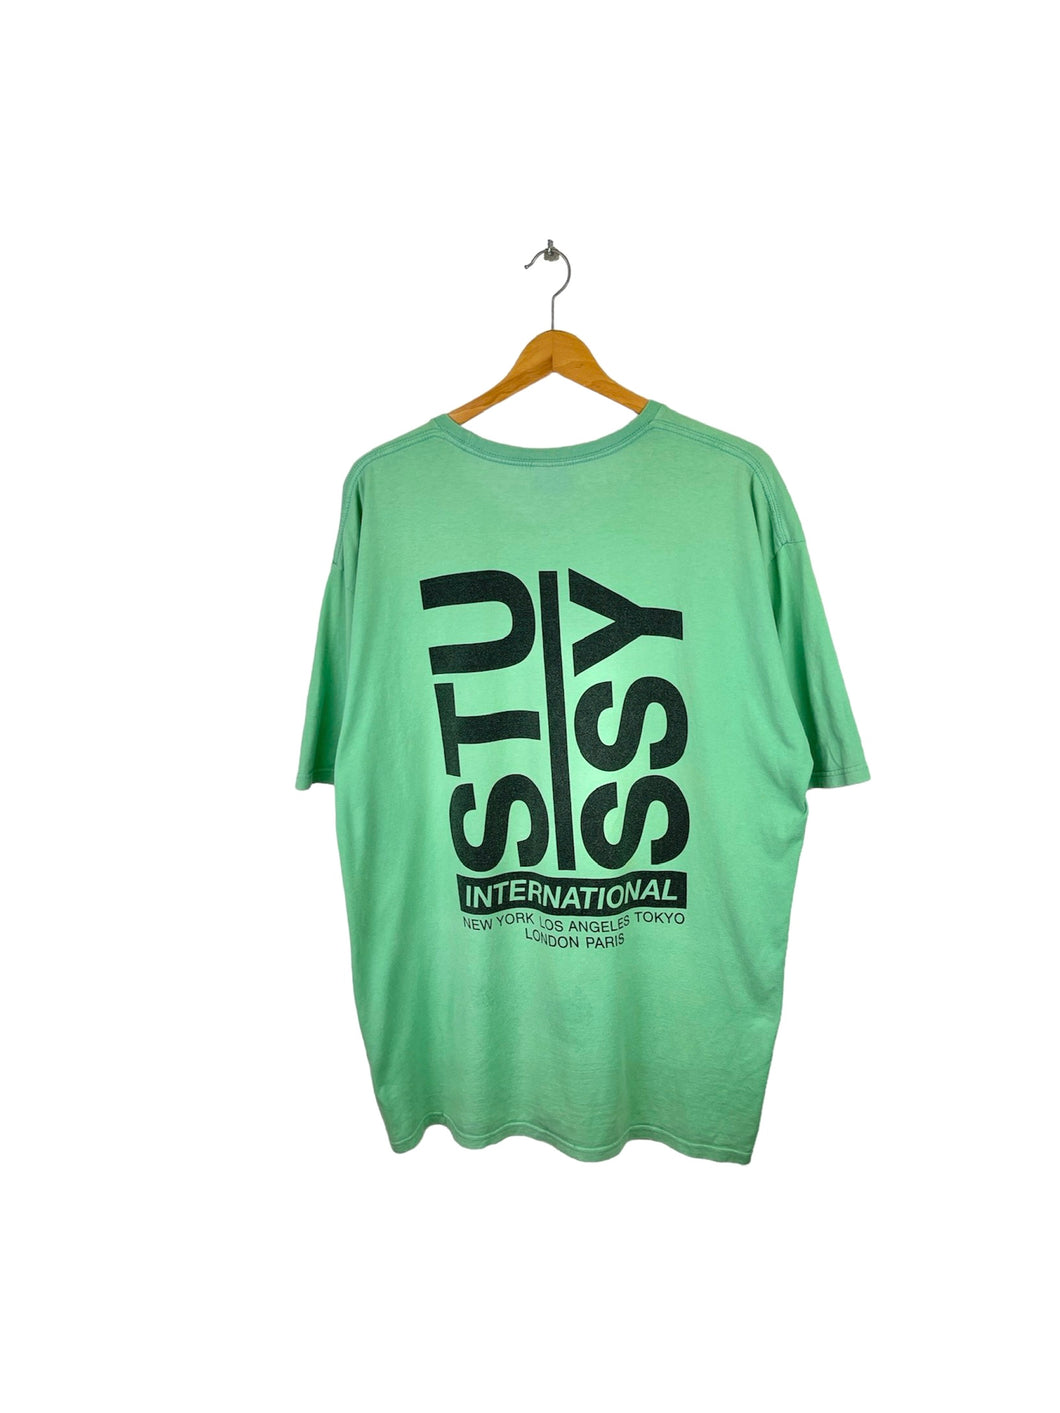 Stussy Tee Shirt - XLarge